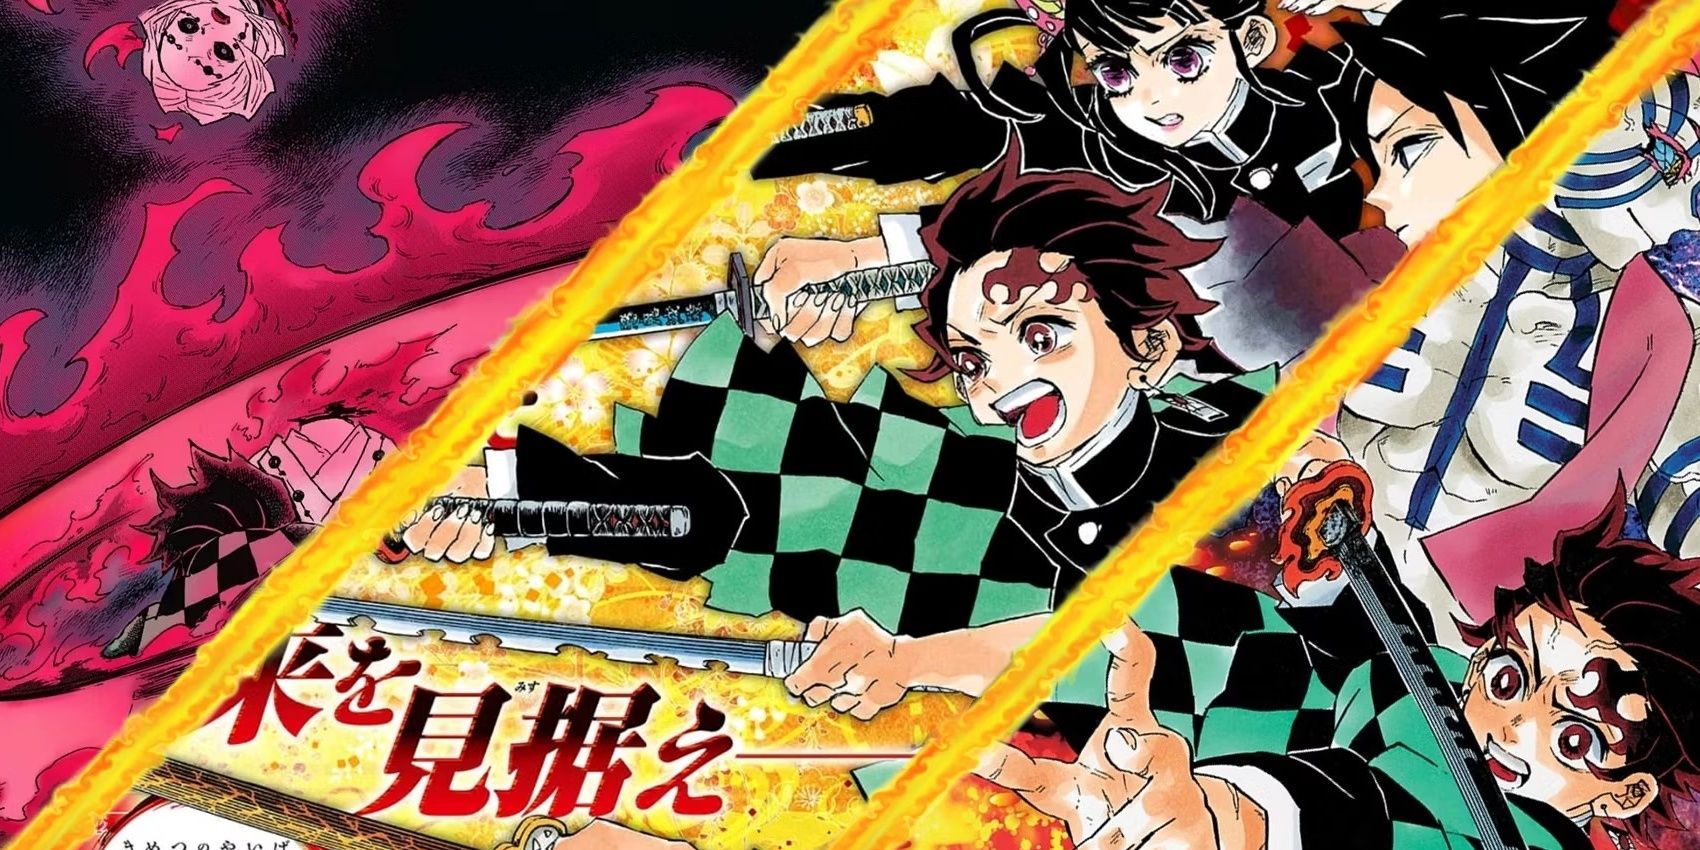 Una imagen en color del manga Demon Slayer, con Tanjiro en ella.